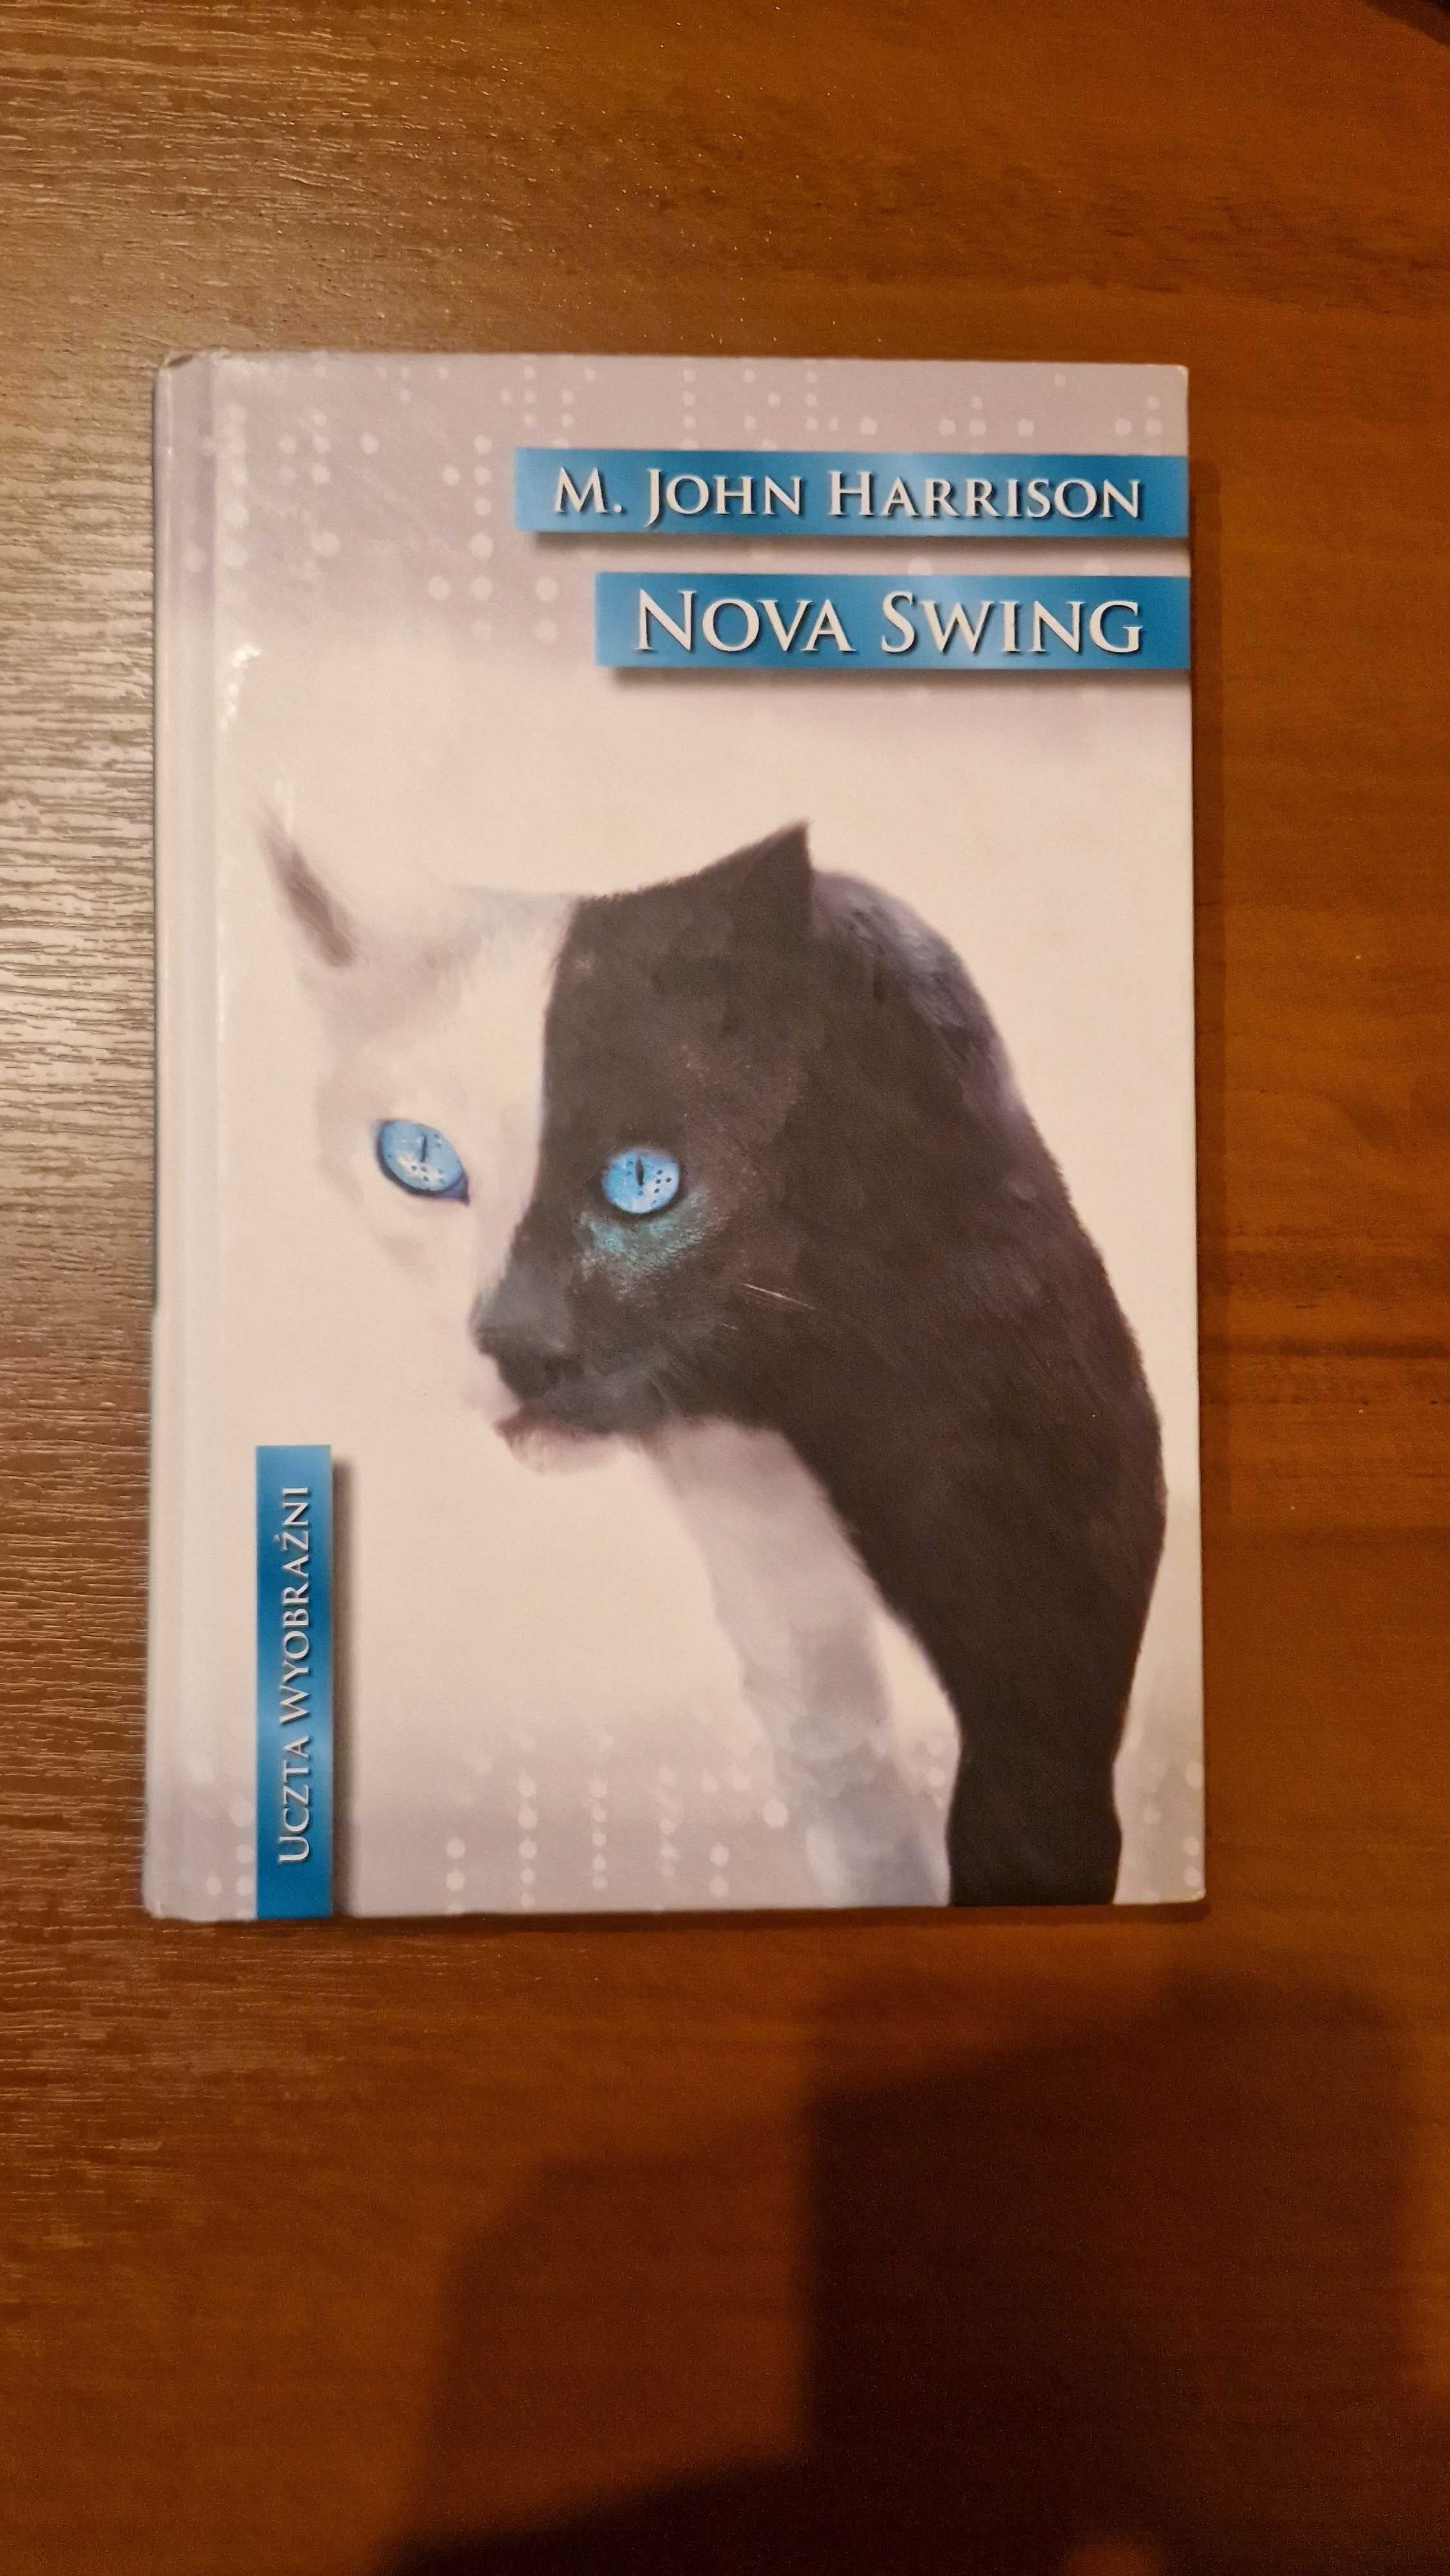 Nova Swing - M. John Harrison